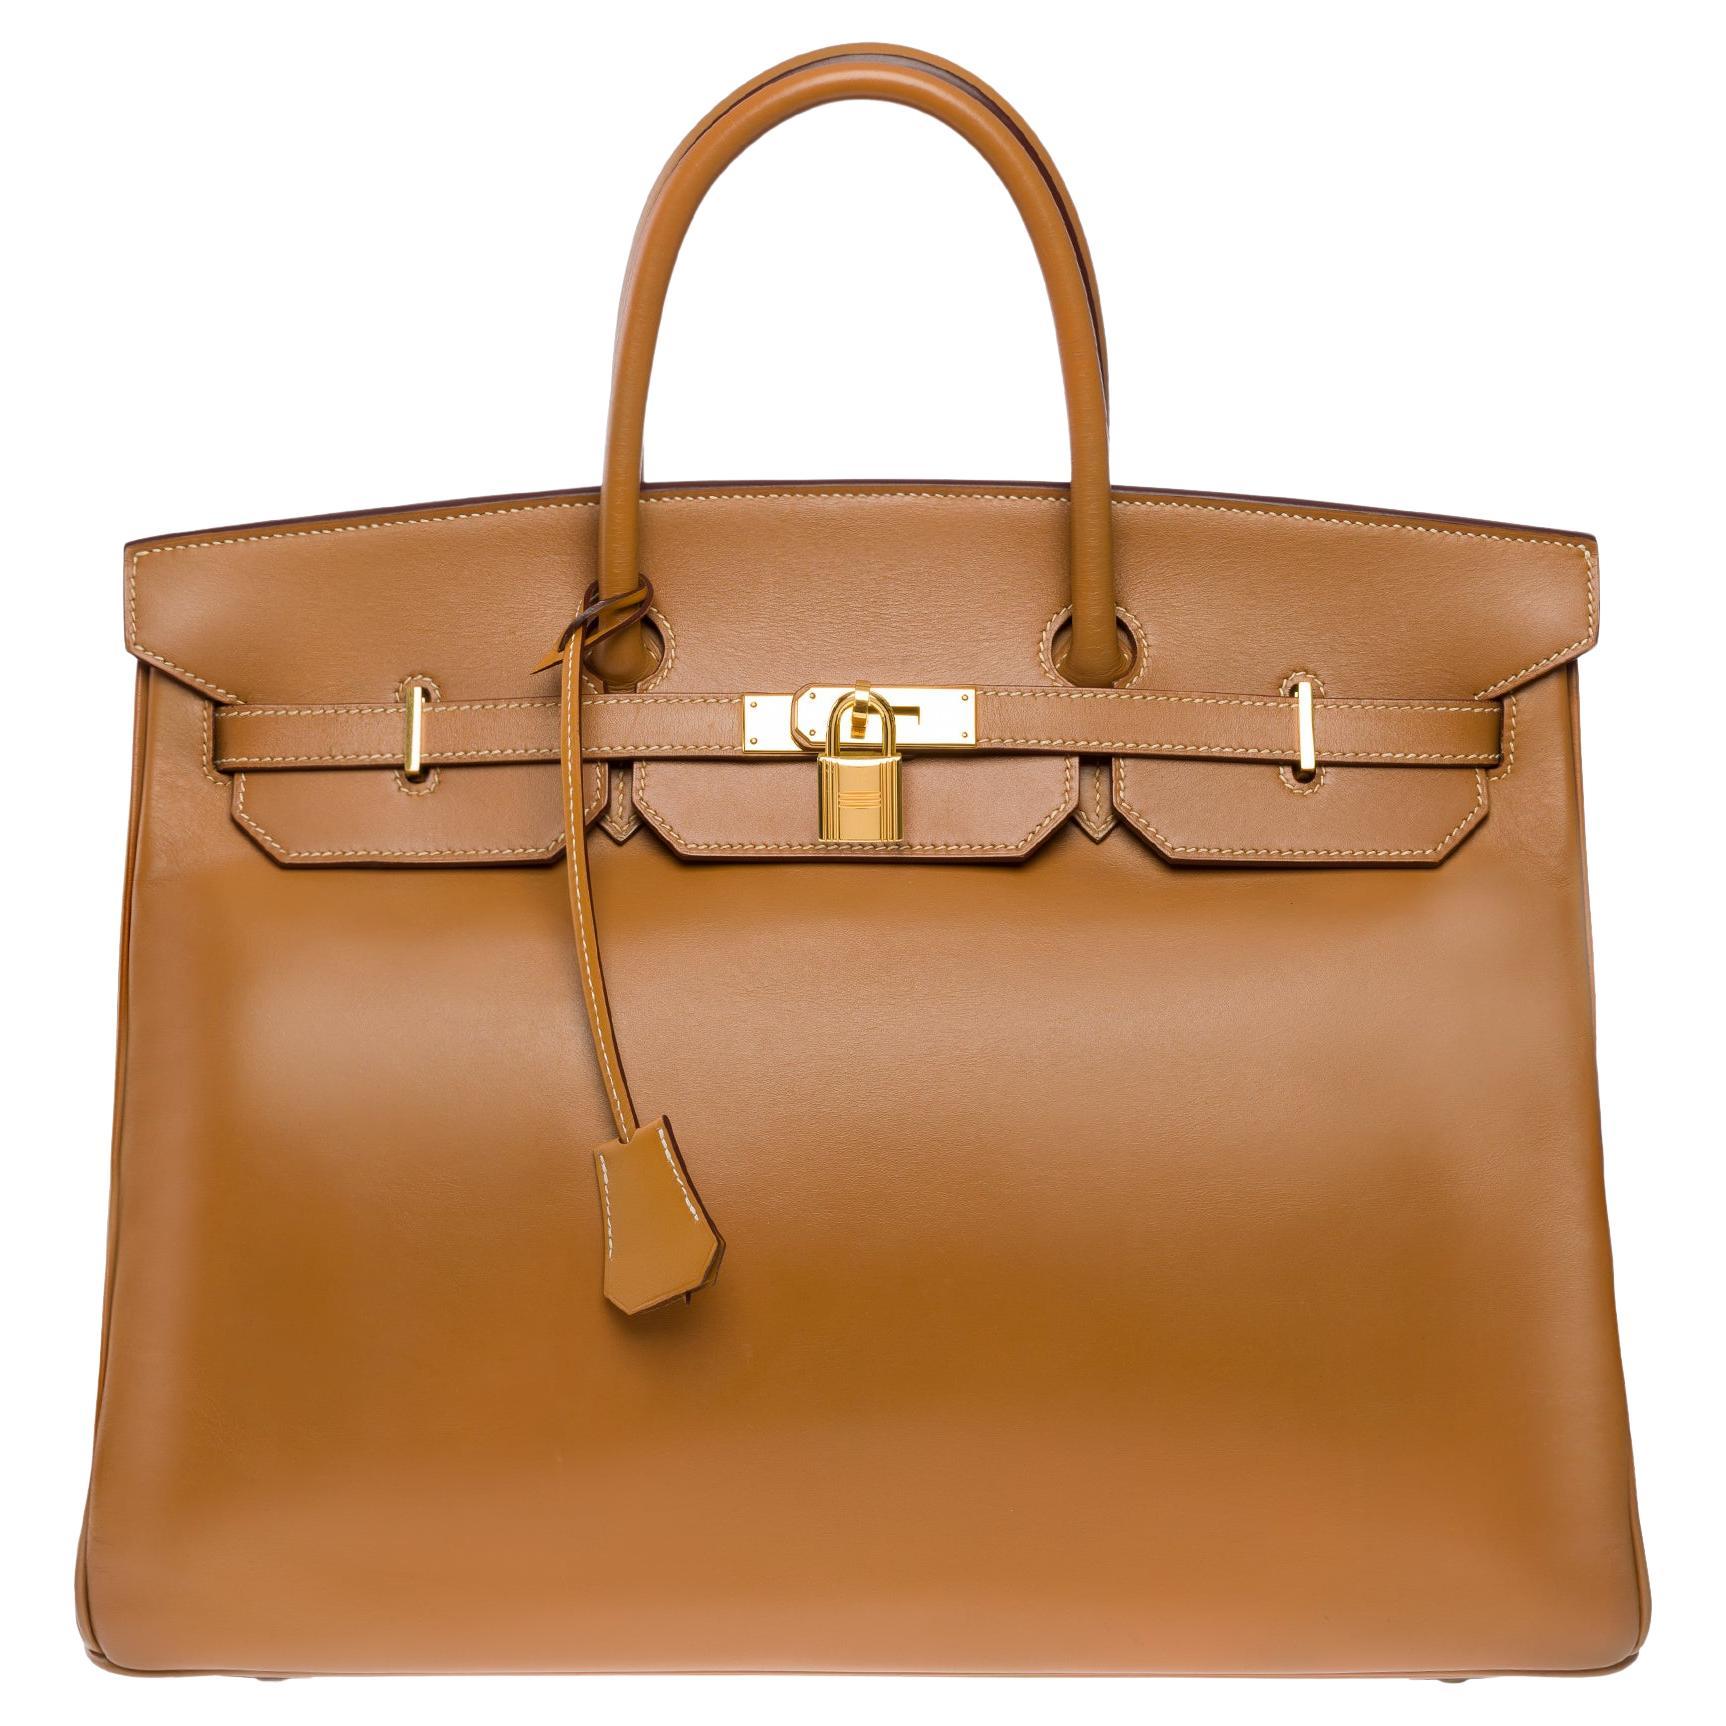 Fantastic Hermes Birkin 40 handbag in Camel (Gold) Chamonix leather, GHW For Sale